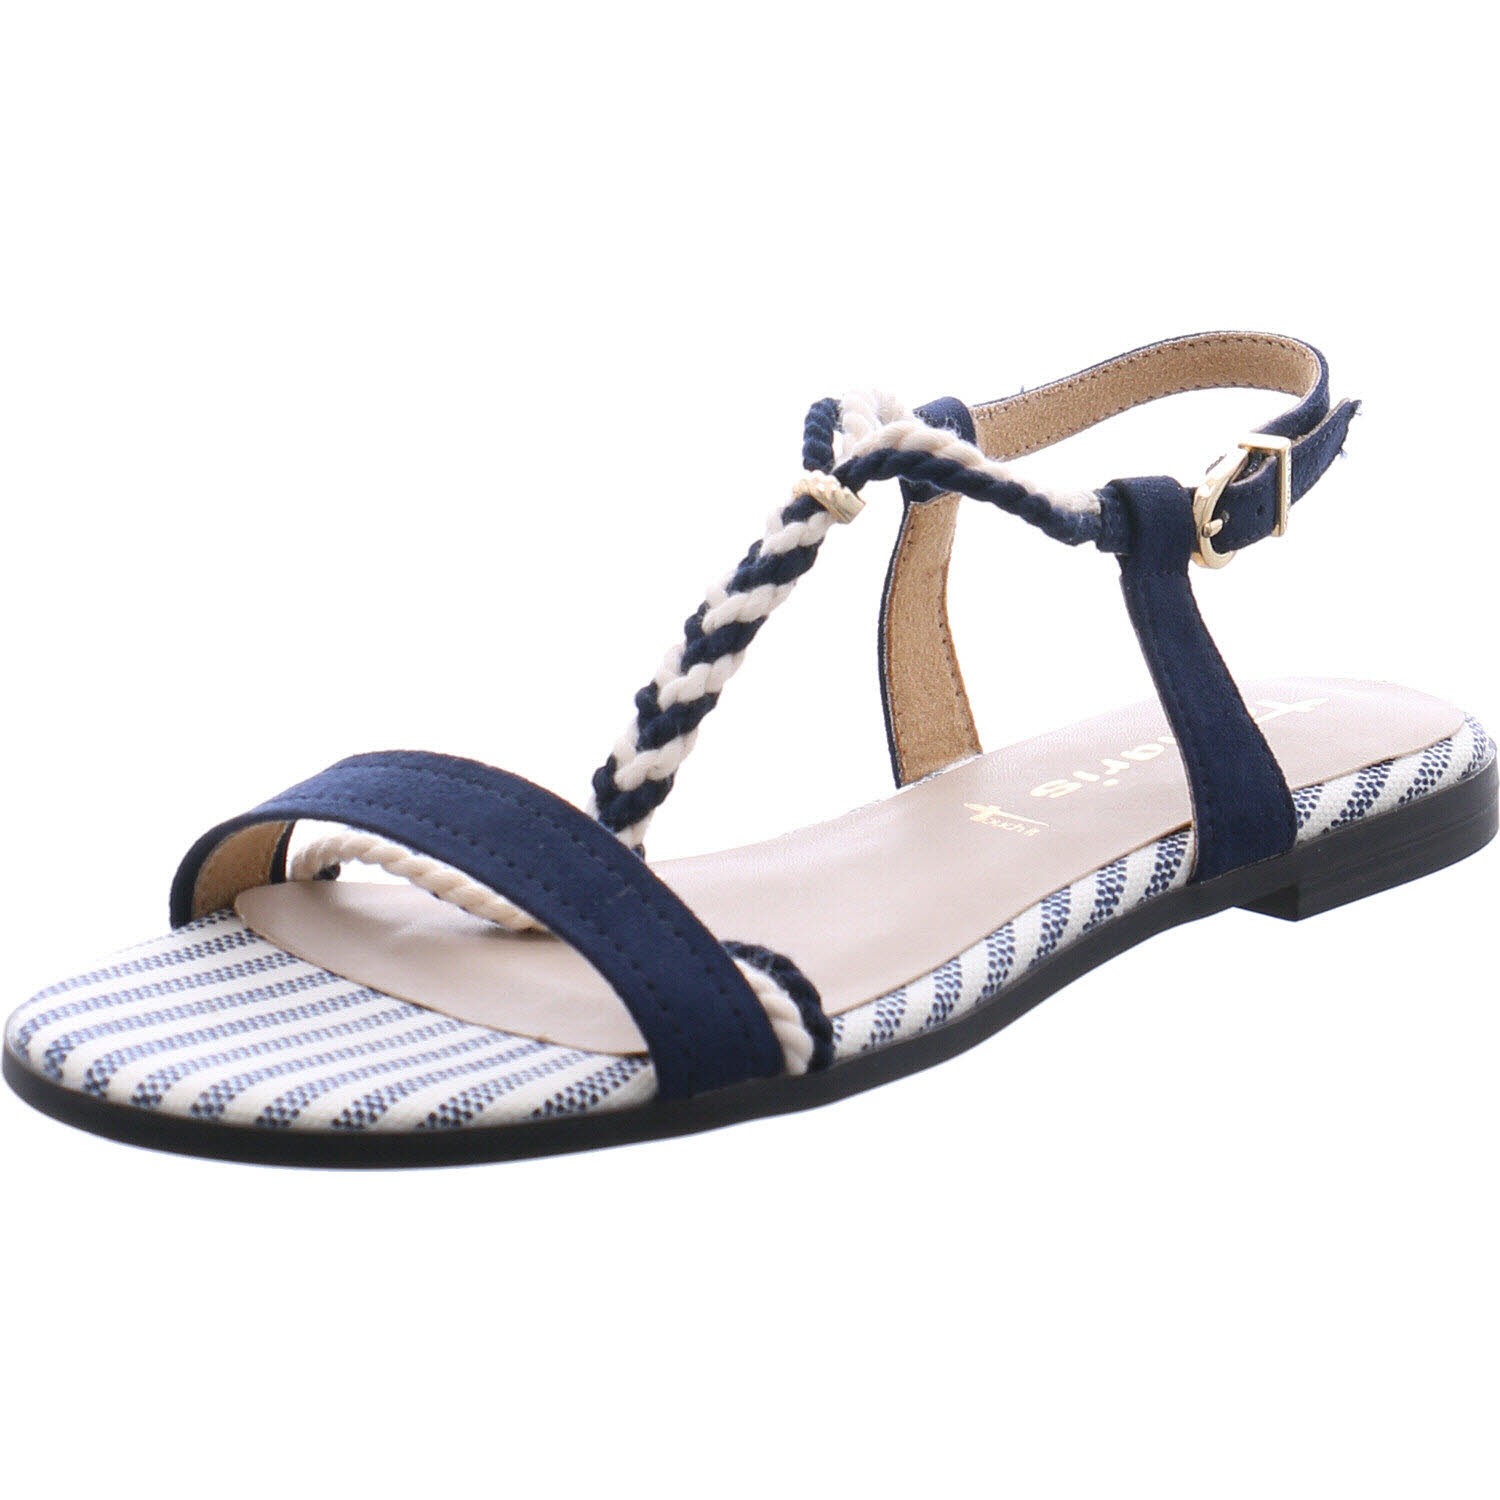 Tamaris Sandale Navy blau/weiß für Damen